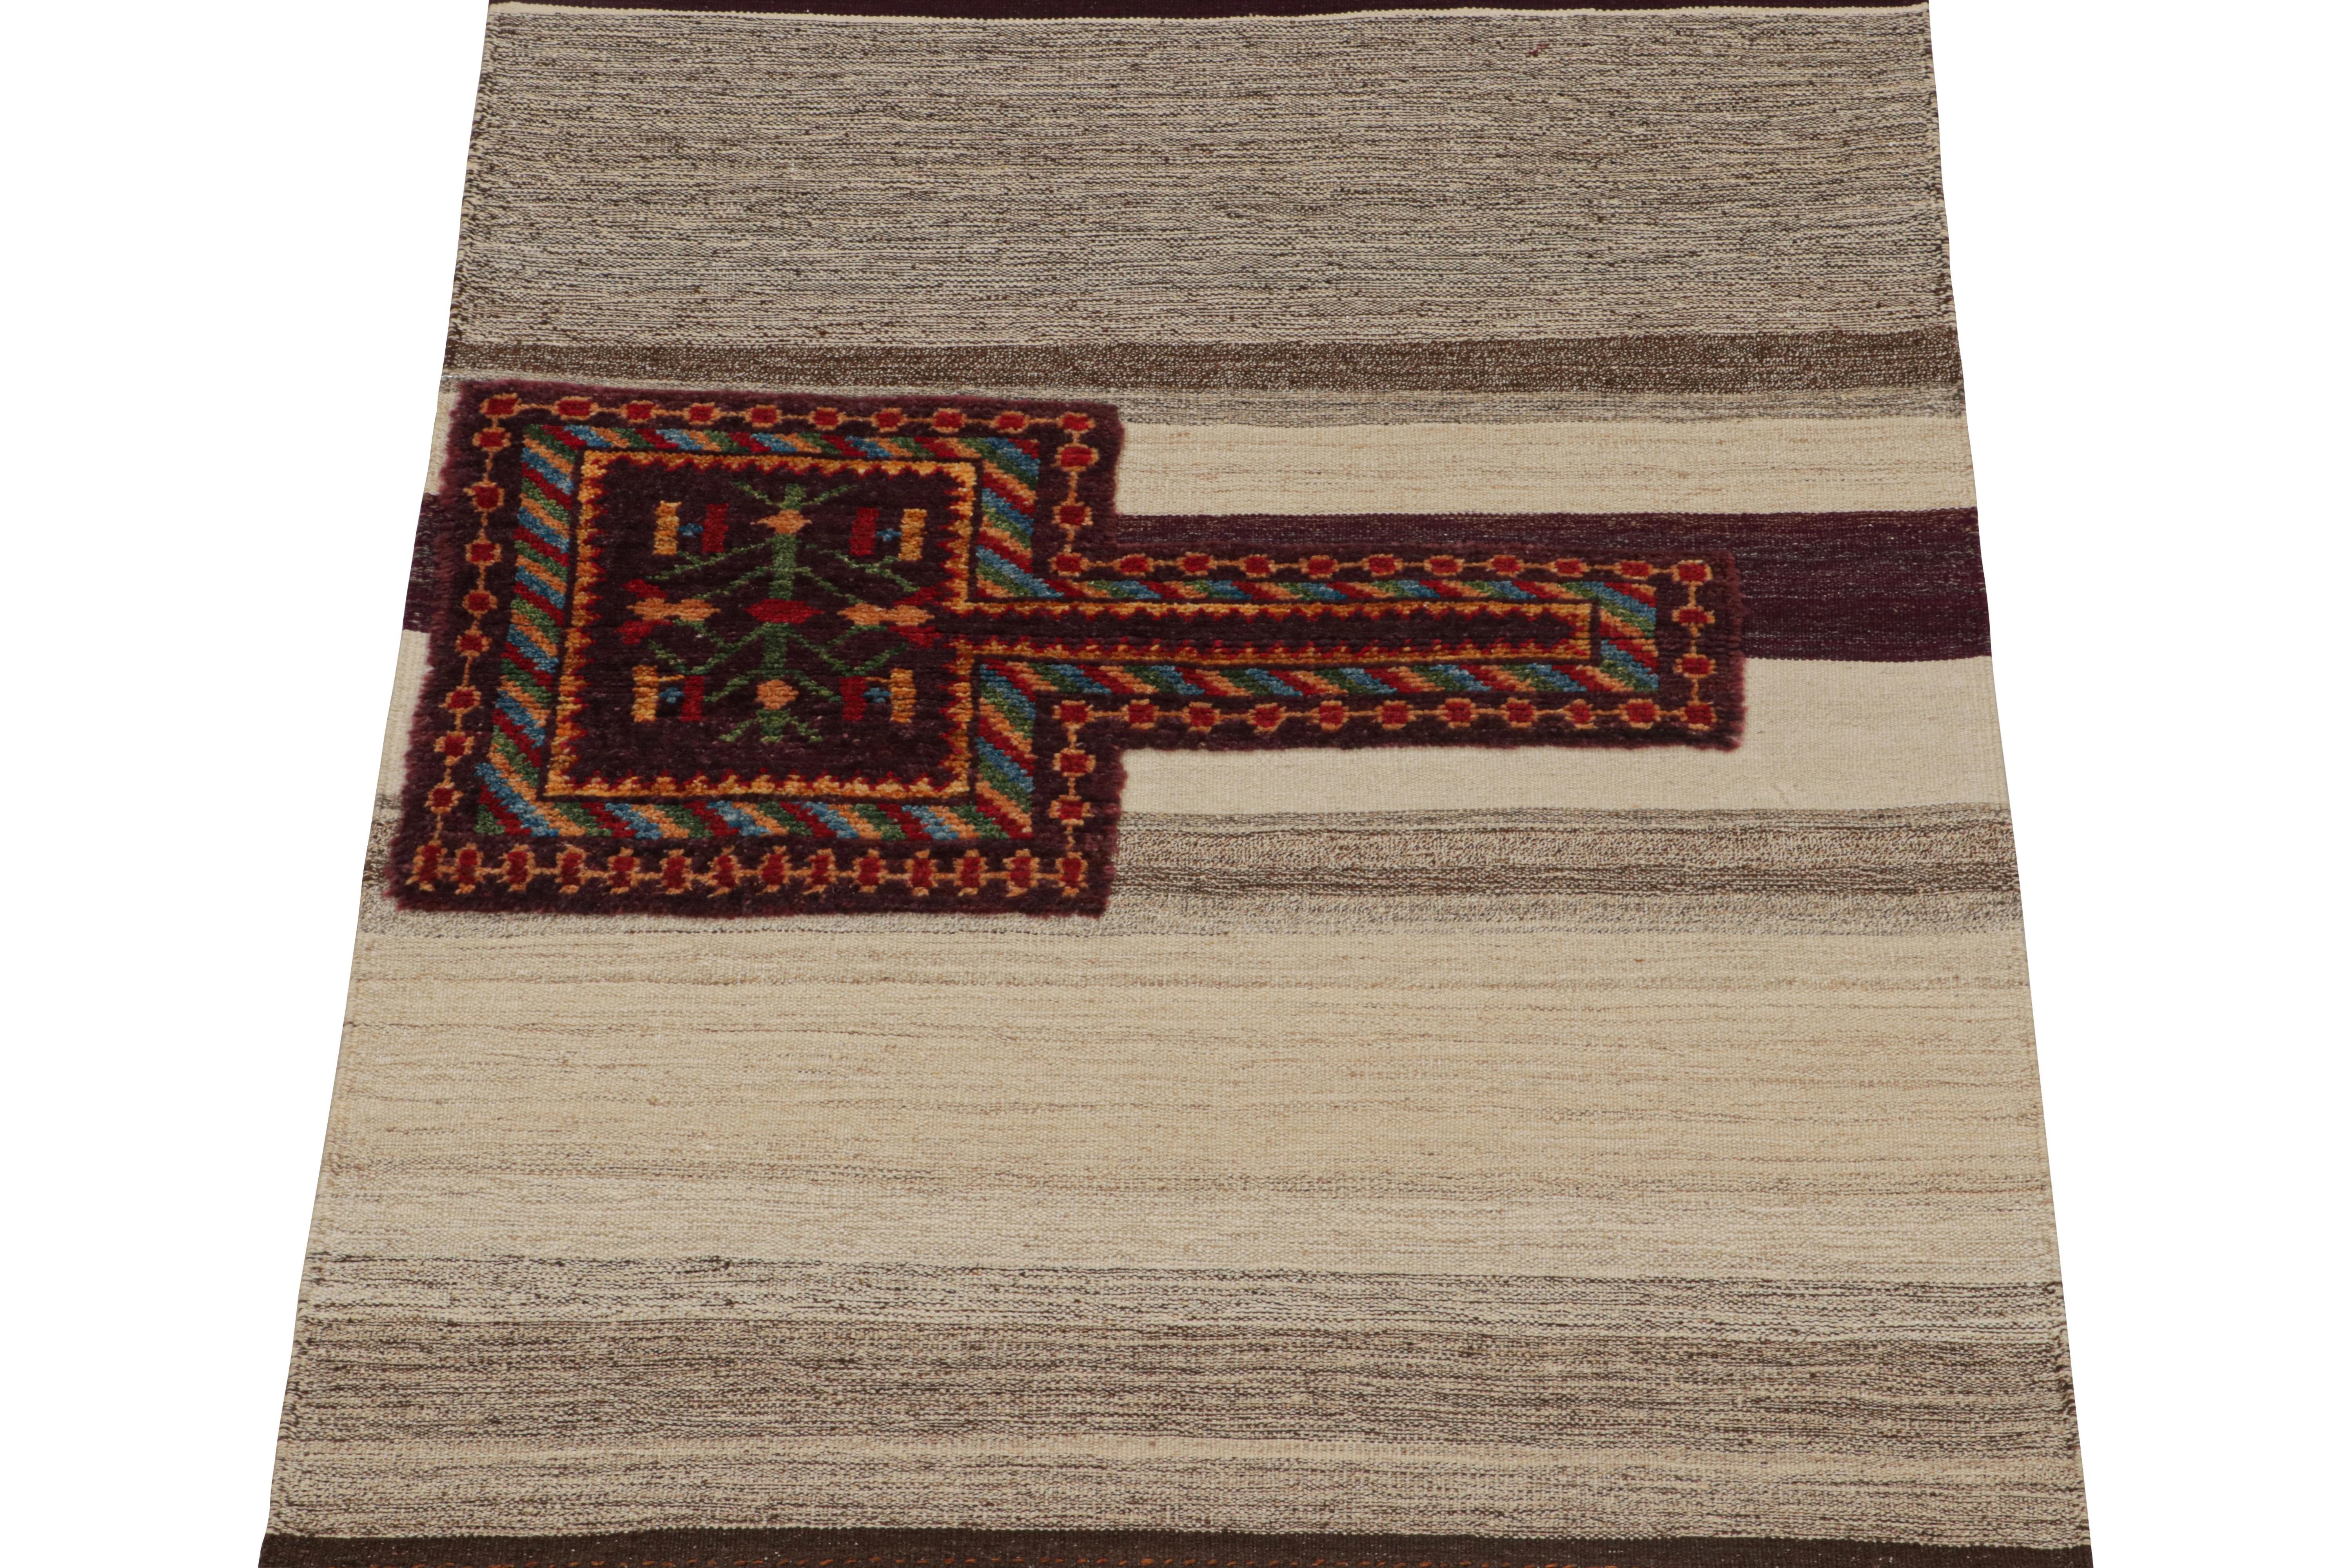 Dieser zeitgenössische persische 3x4-Kilim ist ein aufregender Neuzugang in der Kollektion von Rug & Kilim.

Das aus Wolle handgewebte Design ist vom antiken persischen Tacheh inspiriert, einem Flachgewebe im Stil eines Stammesbeutels. Bei dieser